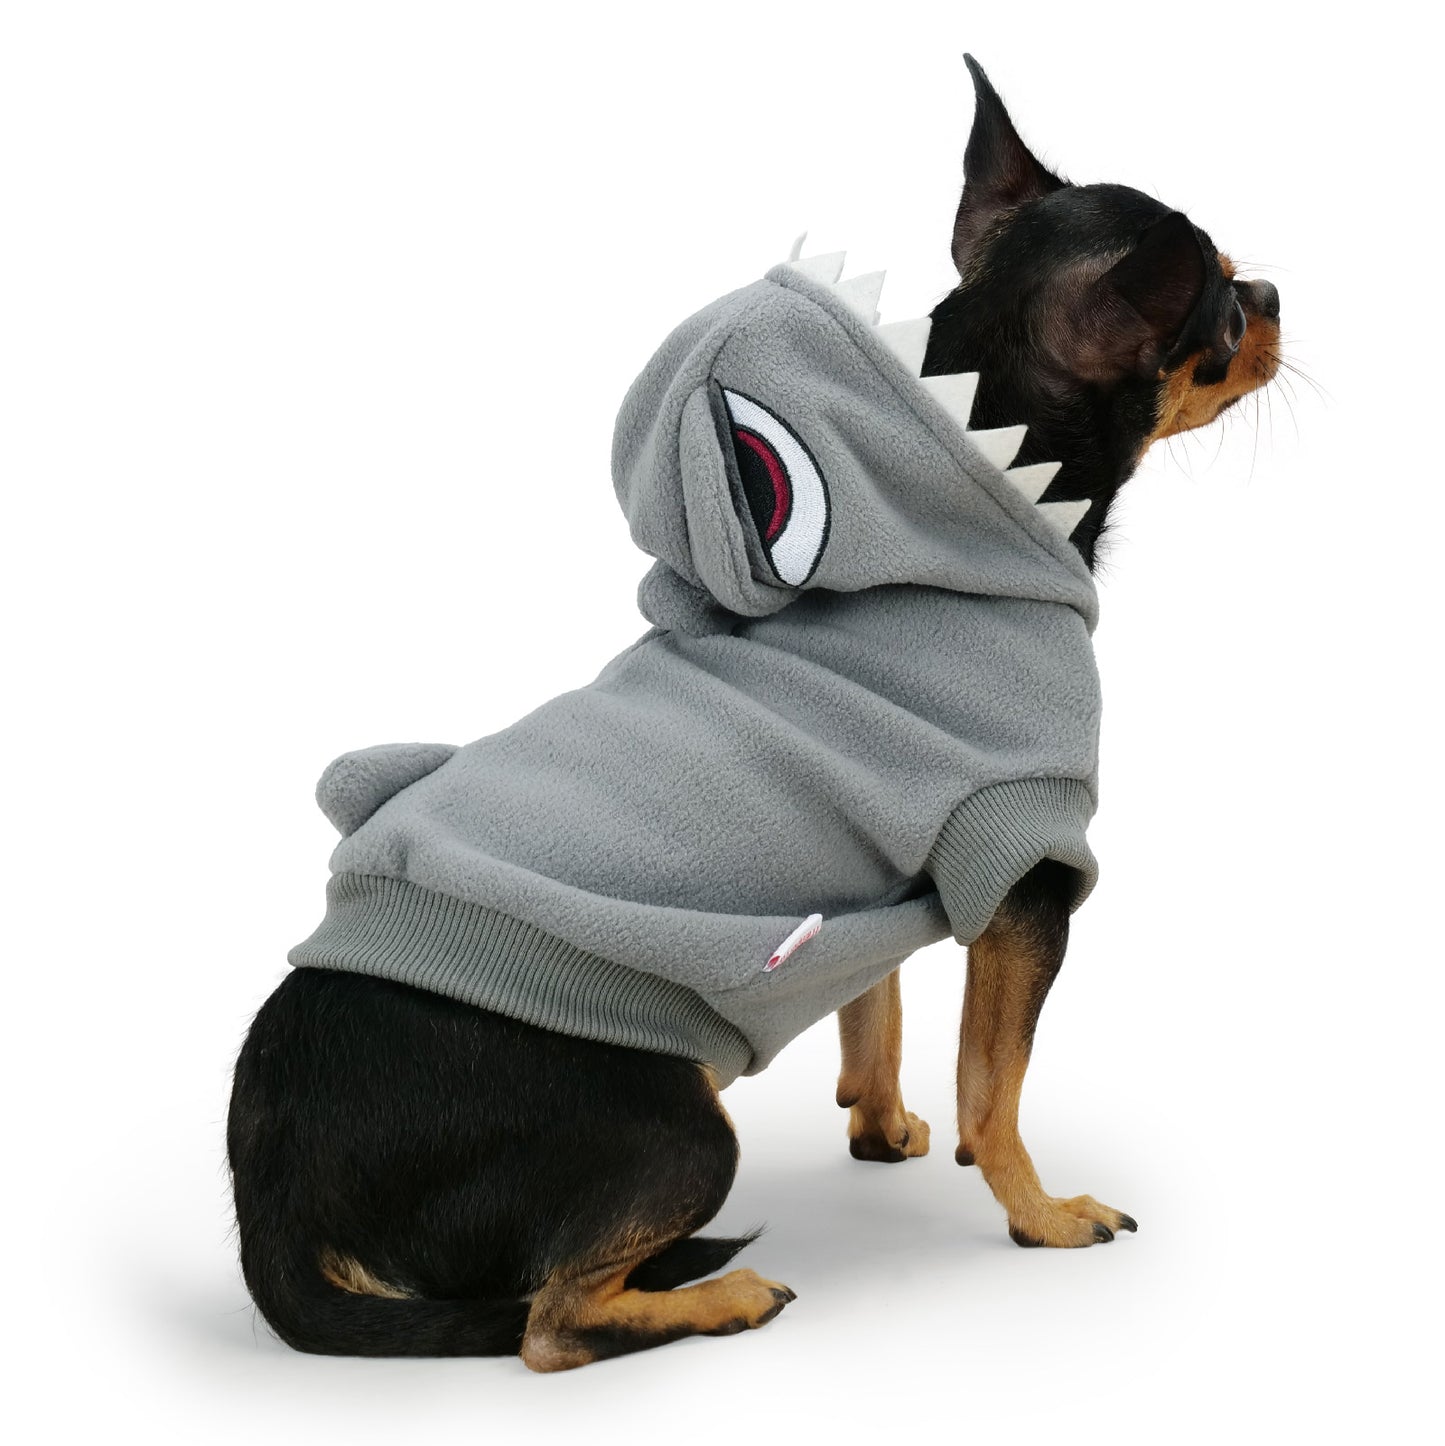 Frienperro Shark Dog Costume